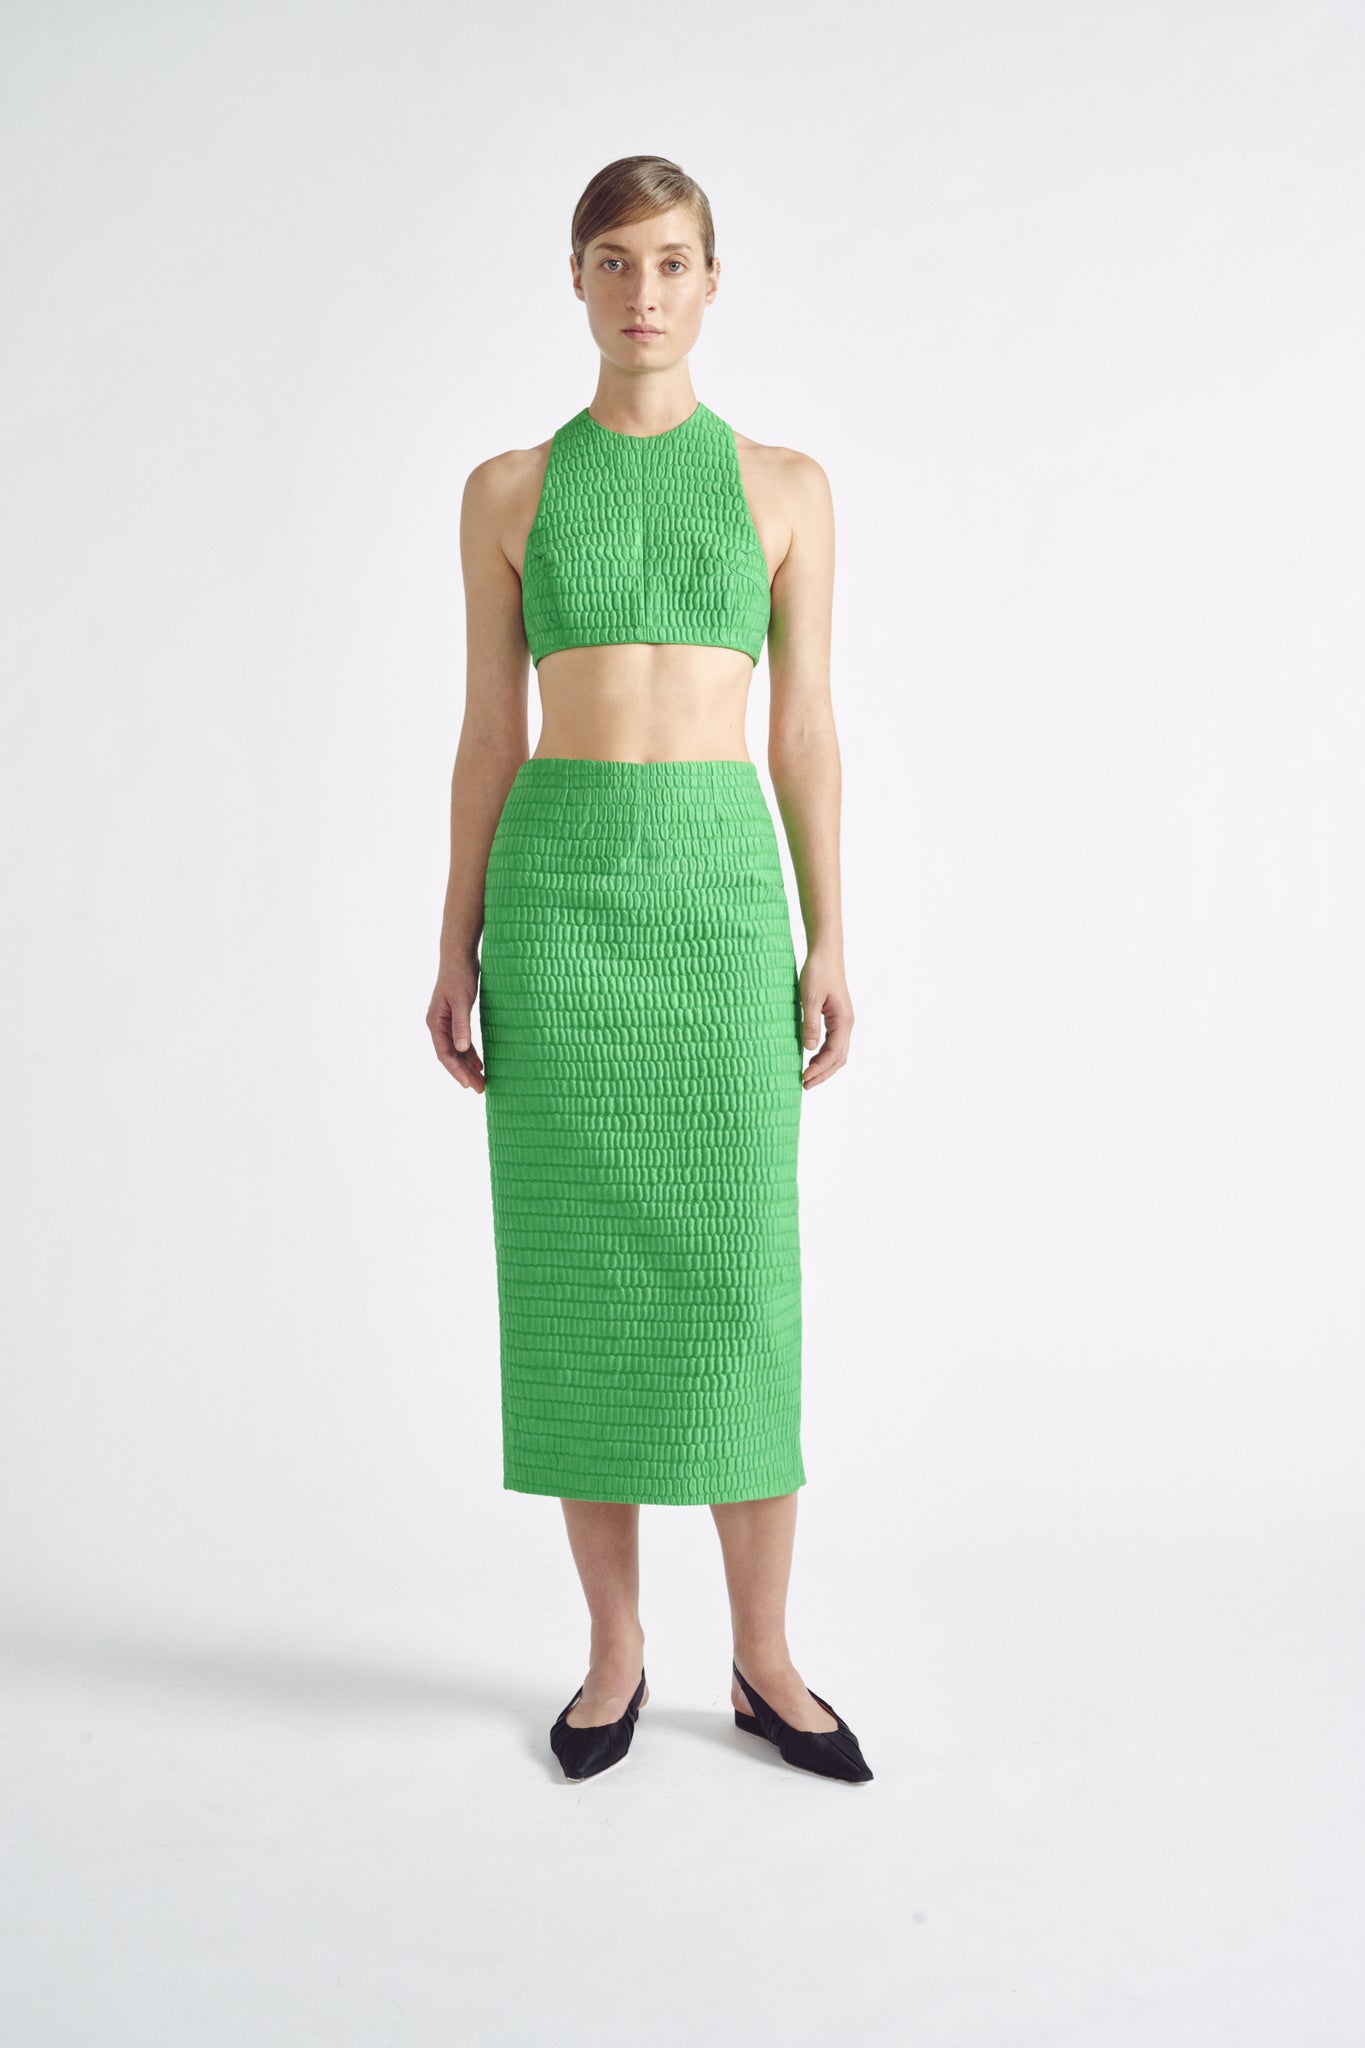 Lissandra Skirt | Green Pencil Skirt in Croc Jacquard | Emilia Wickstead